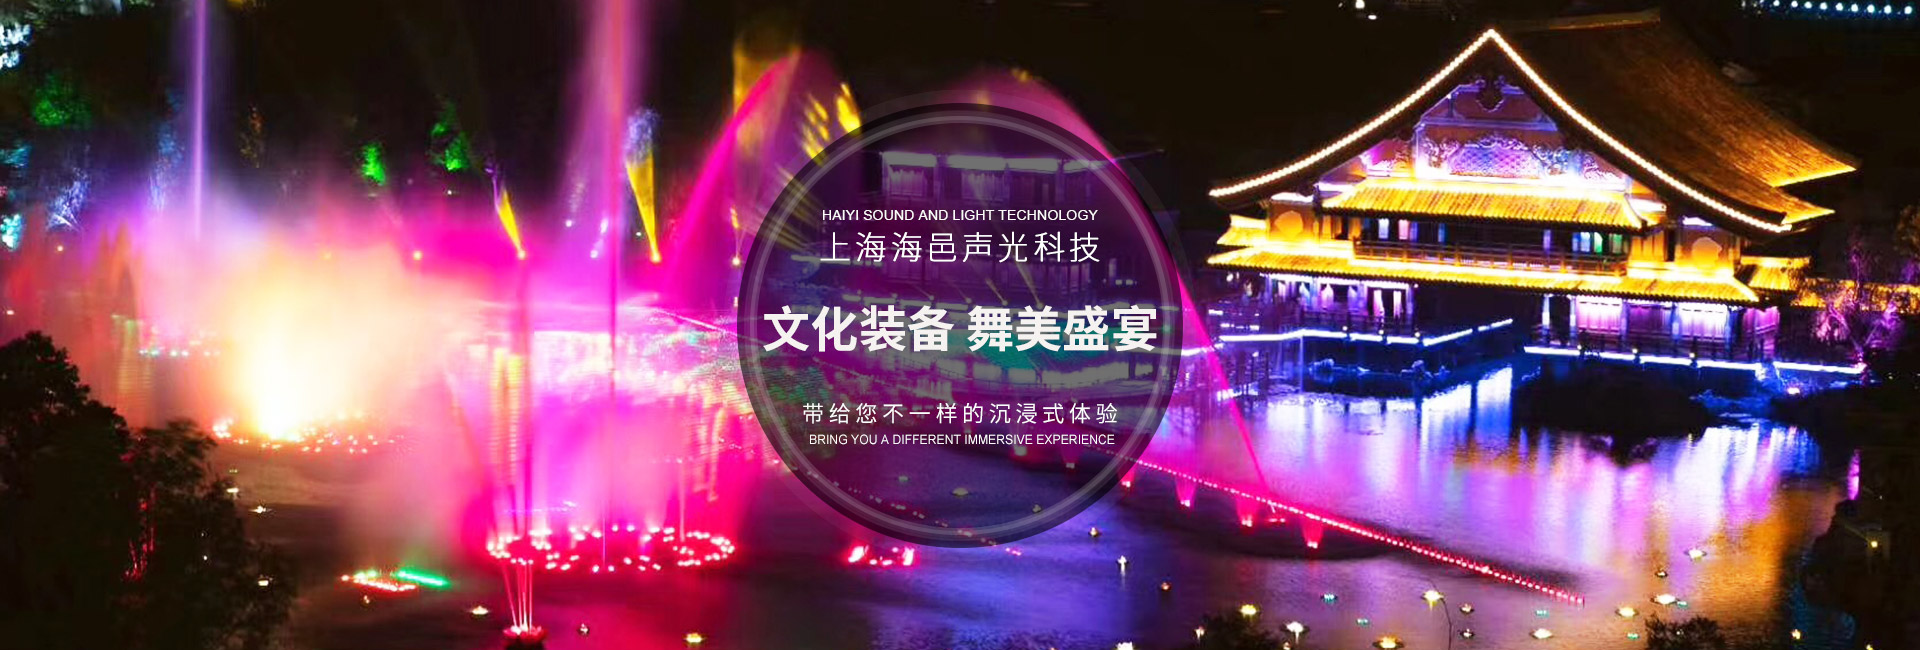 上海海邑声光科技有限公司